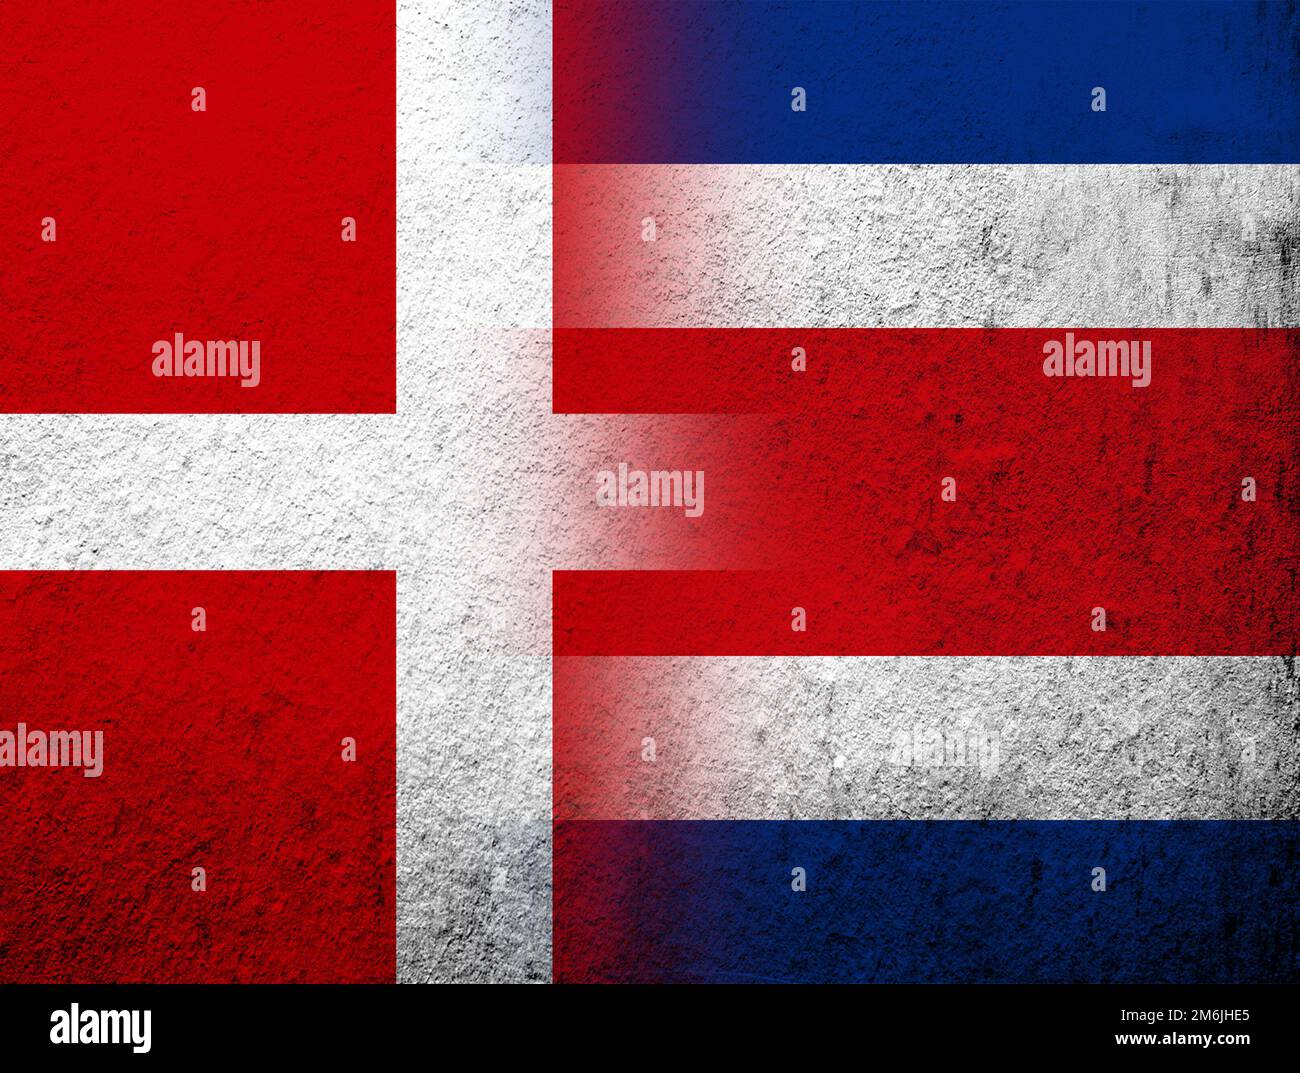 Bandera nacional del Reino de Dinamarca con bandera nacional de la República de Costa Rica. Fondo de grunge Foto de stock